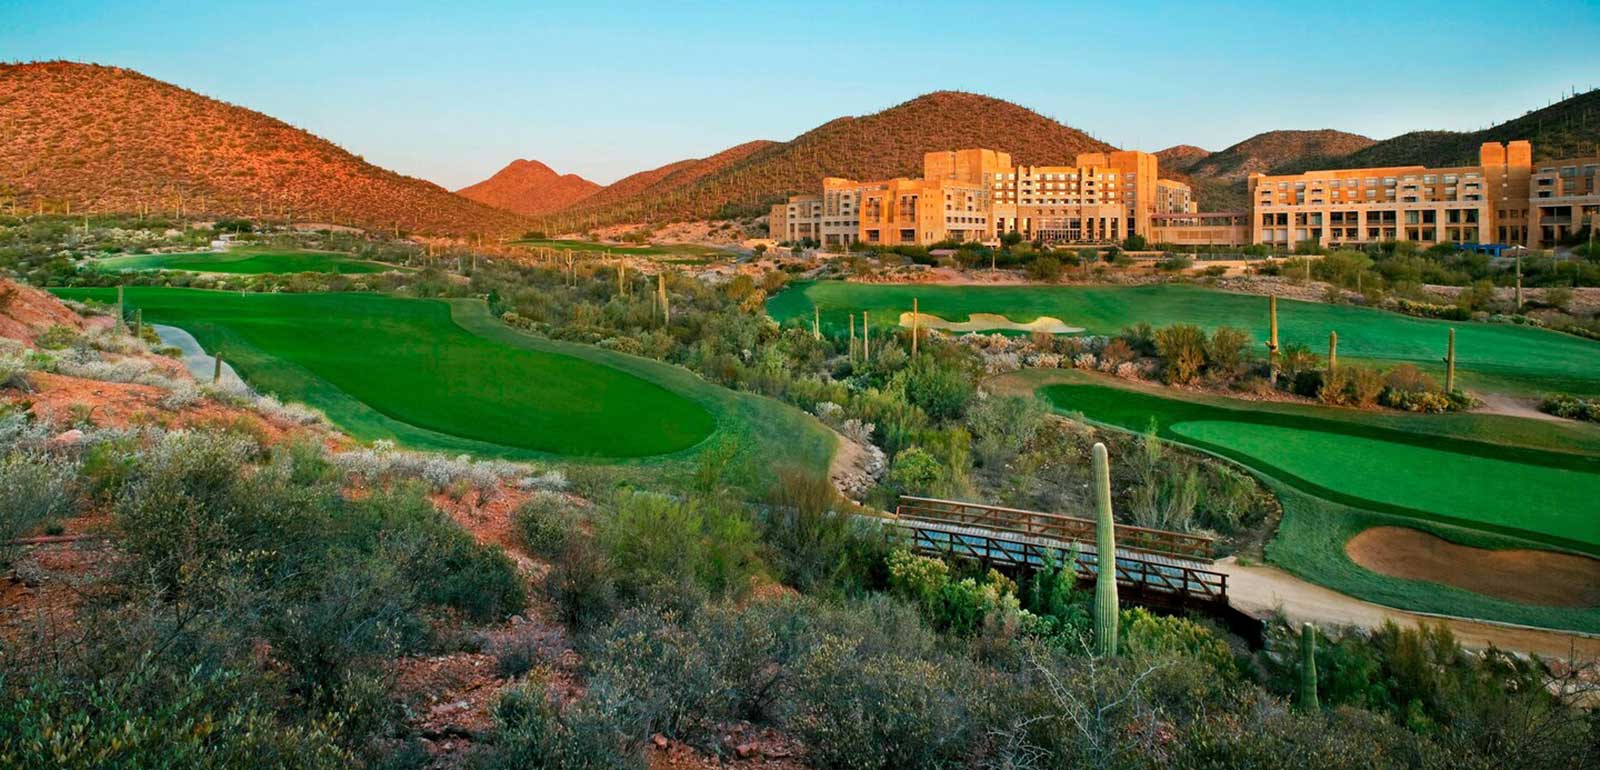 JW Marriott Starr Pass Resort & Spa | Tucson, Arizona